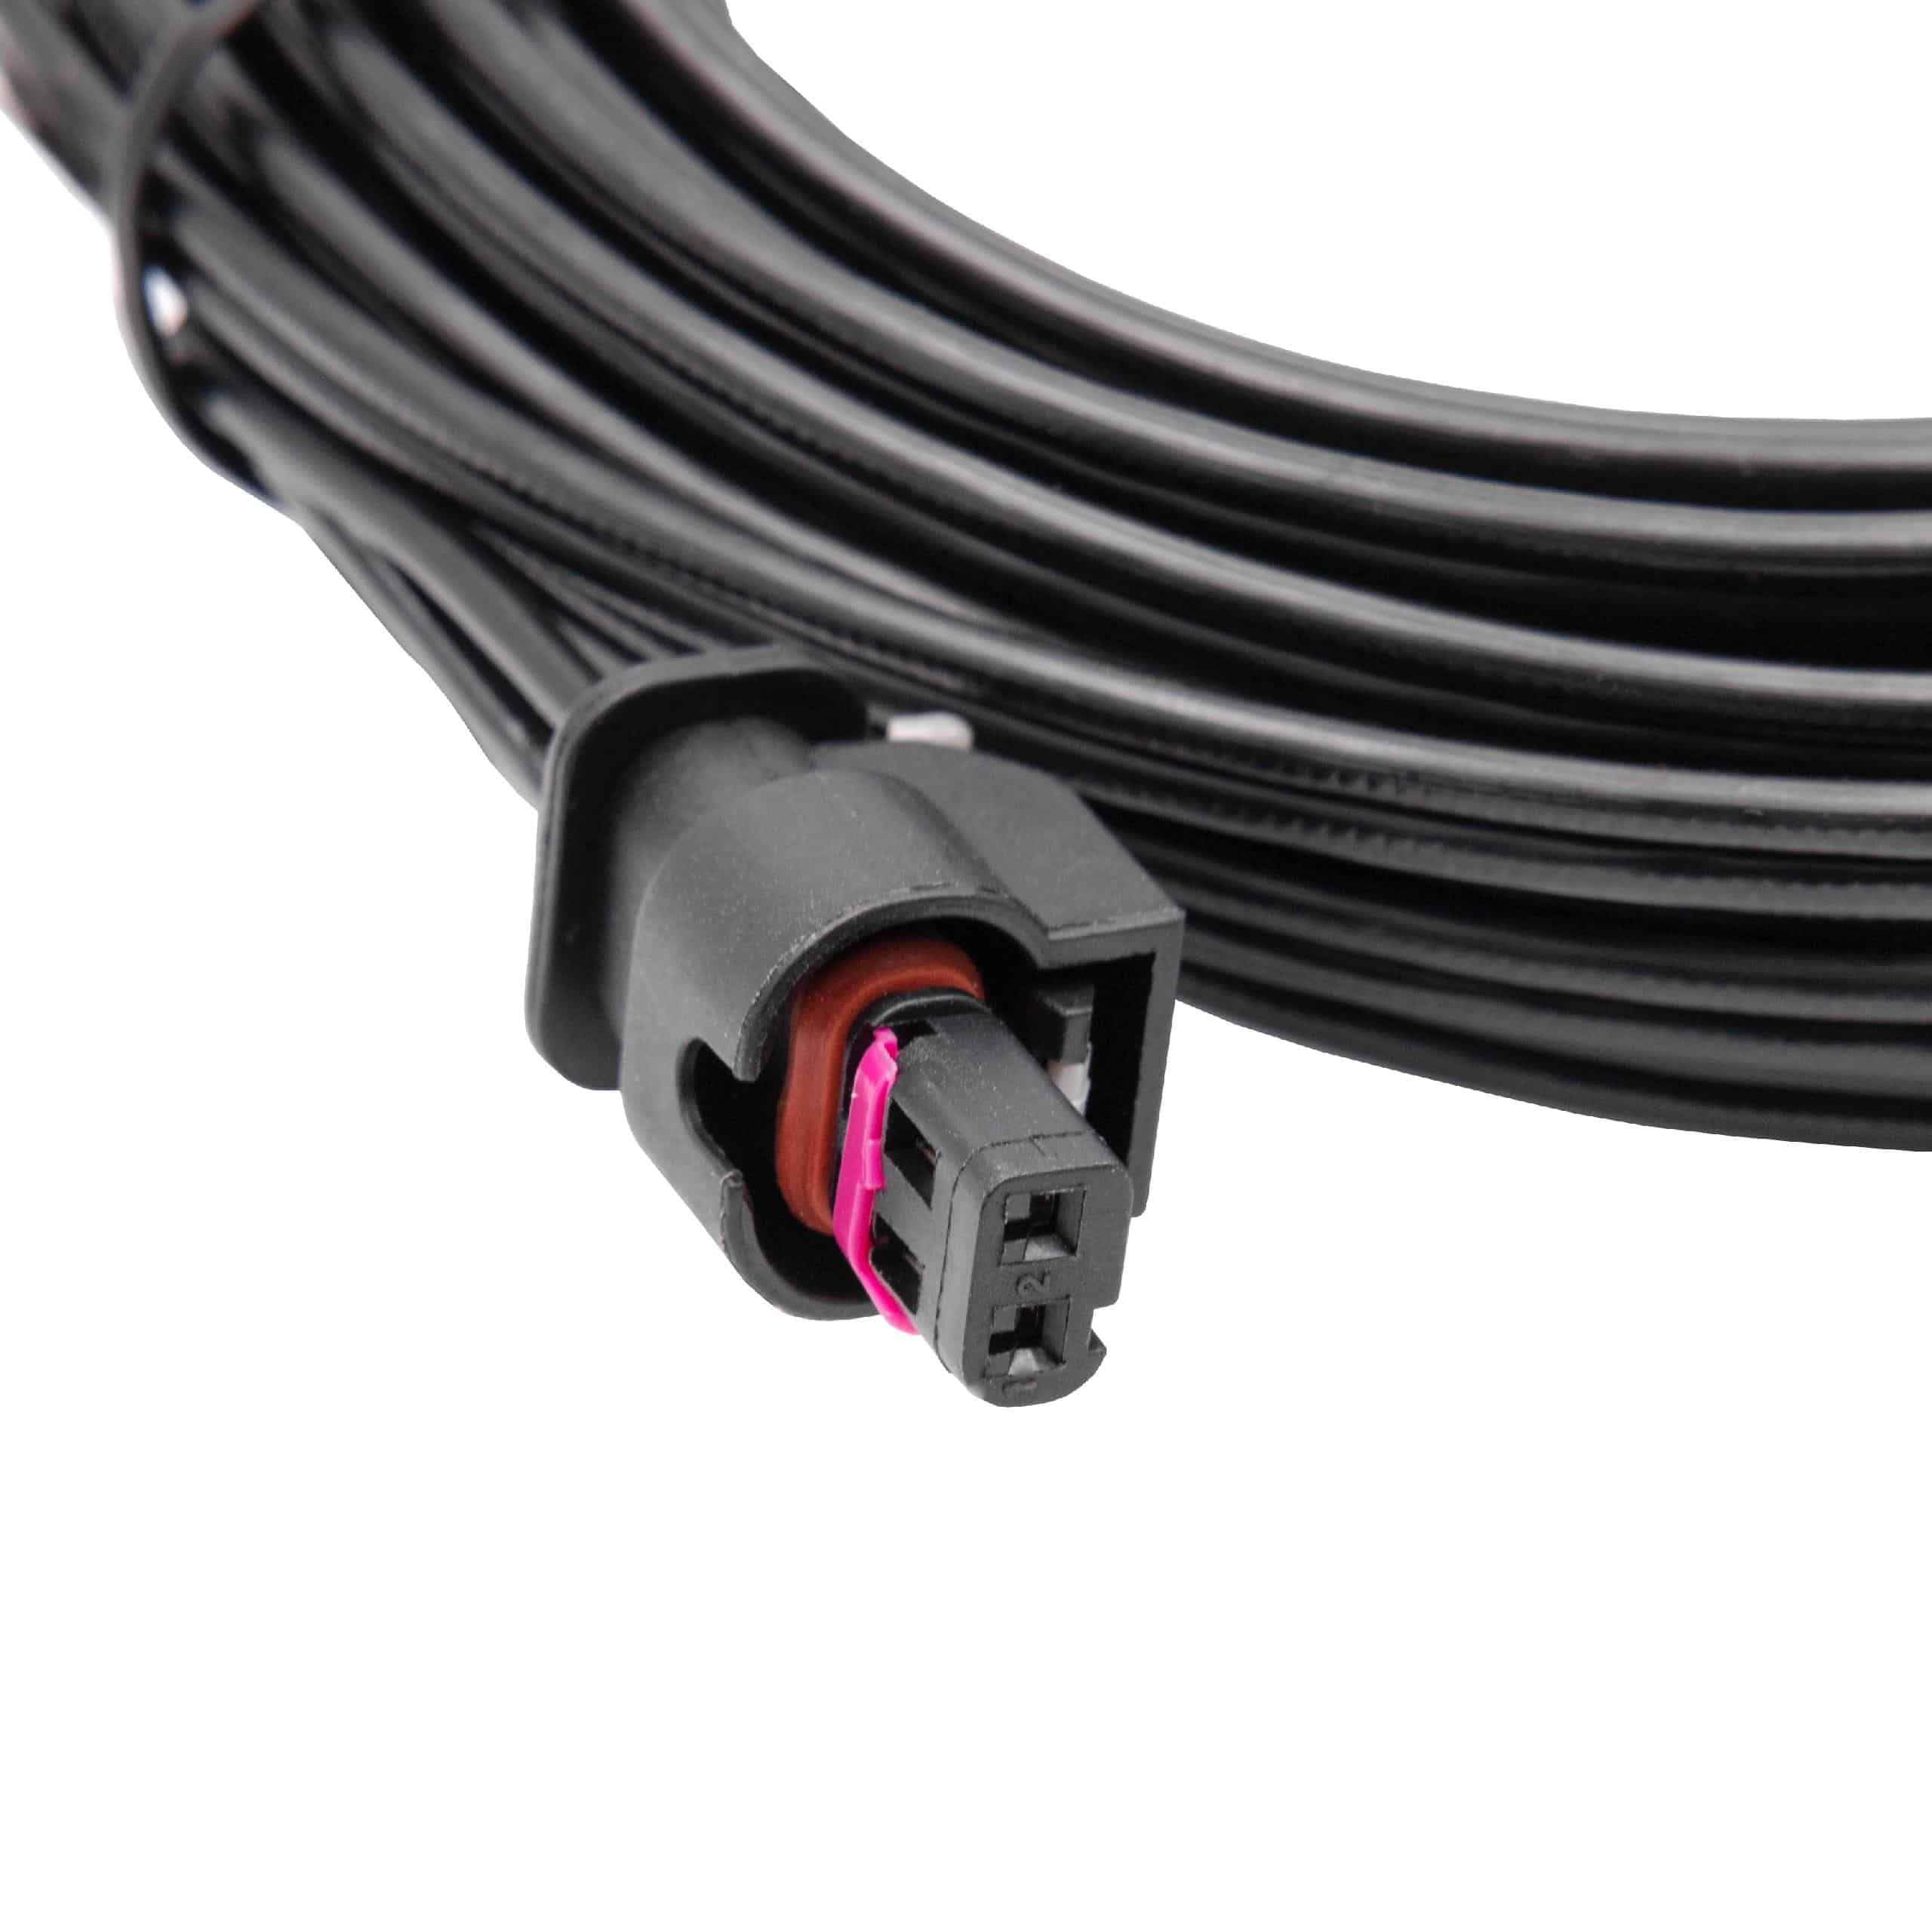 Cable de bajo voltaje reemplaza Husqvarna 581 16 66-01, 581 16 66-03, 581 16 66-05 - cable trafo, 10 m